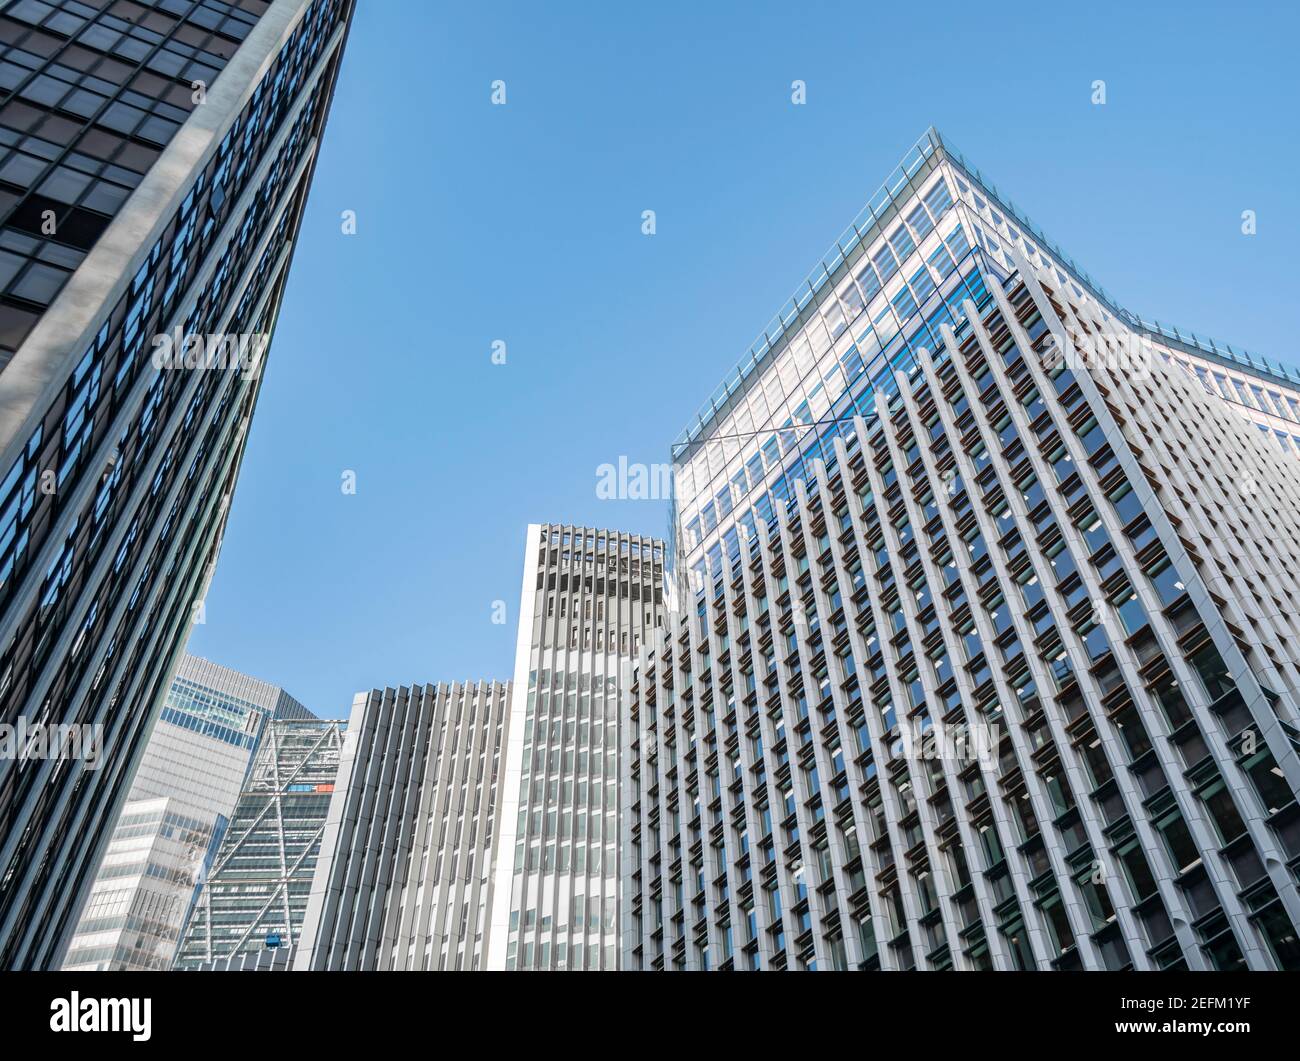 Blick auf die Vielfalt der hohen Glas-Geschäftsgebäude nahe beieinander. Überwältigende moderne Architektur der immer wachsenden Hauptstadt. Massiv Stockfoto